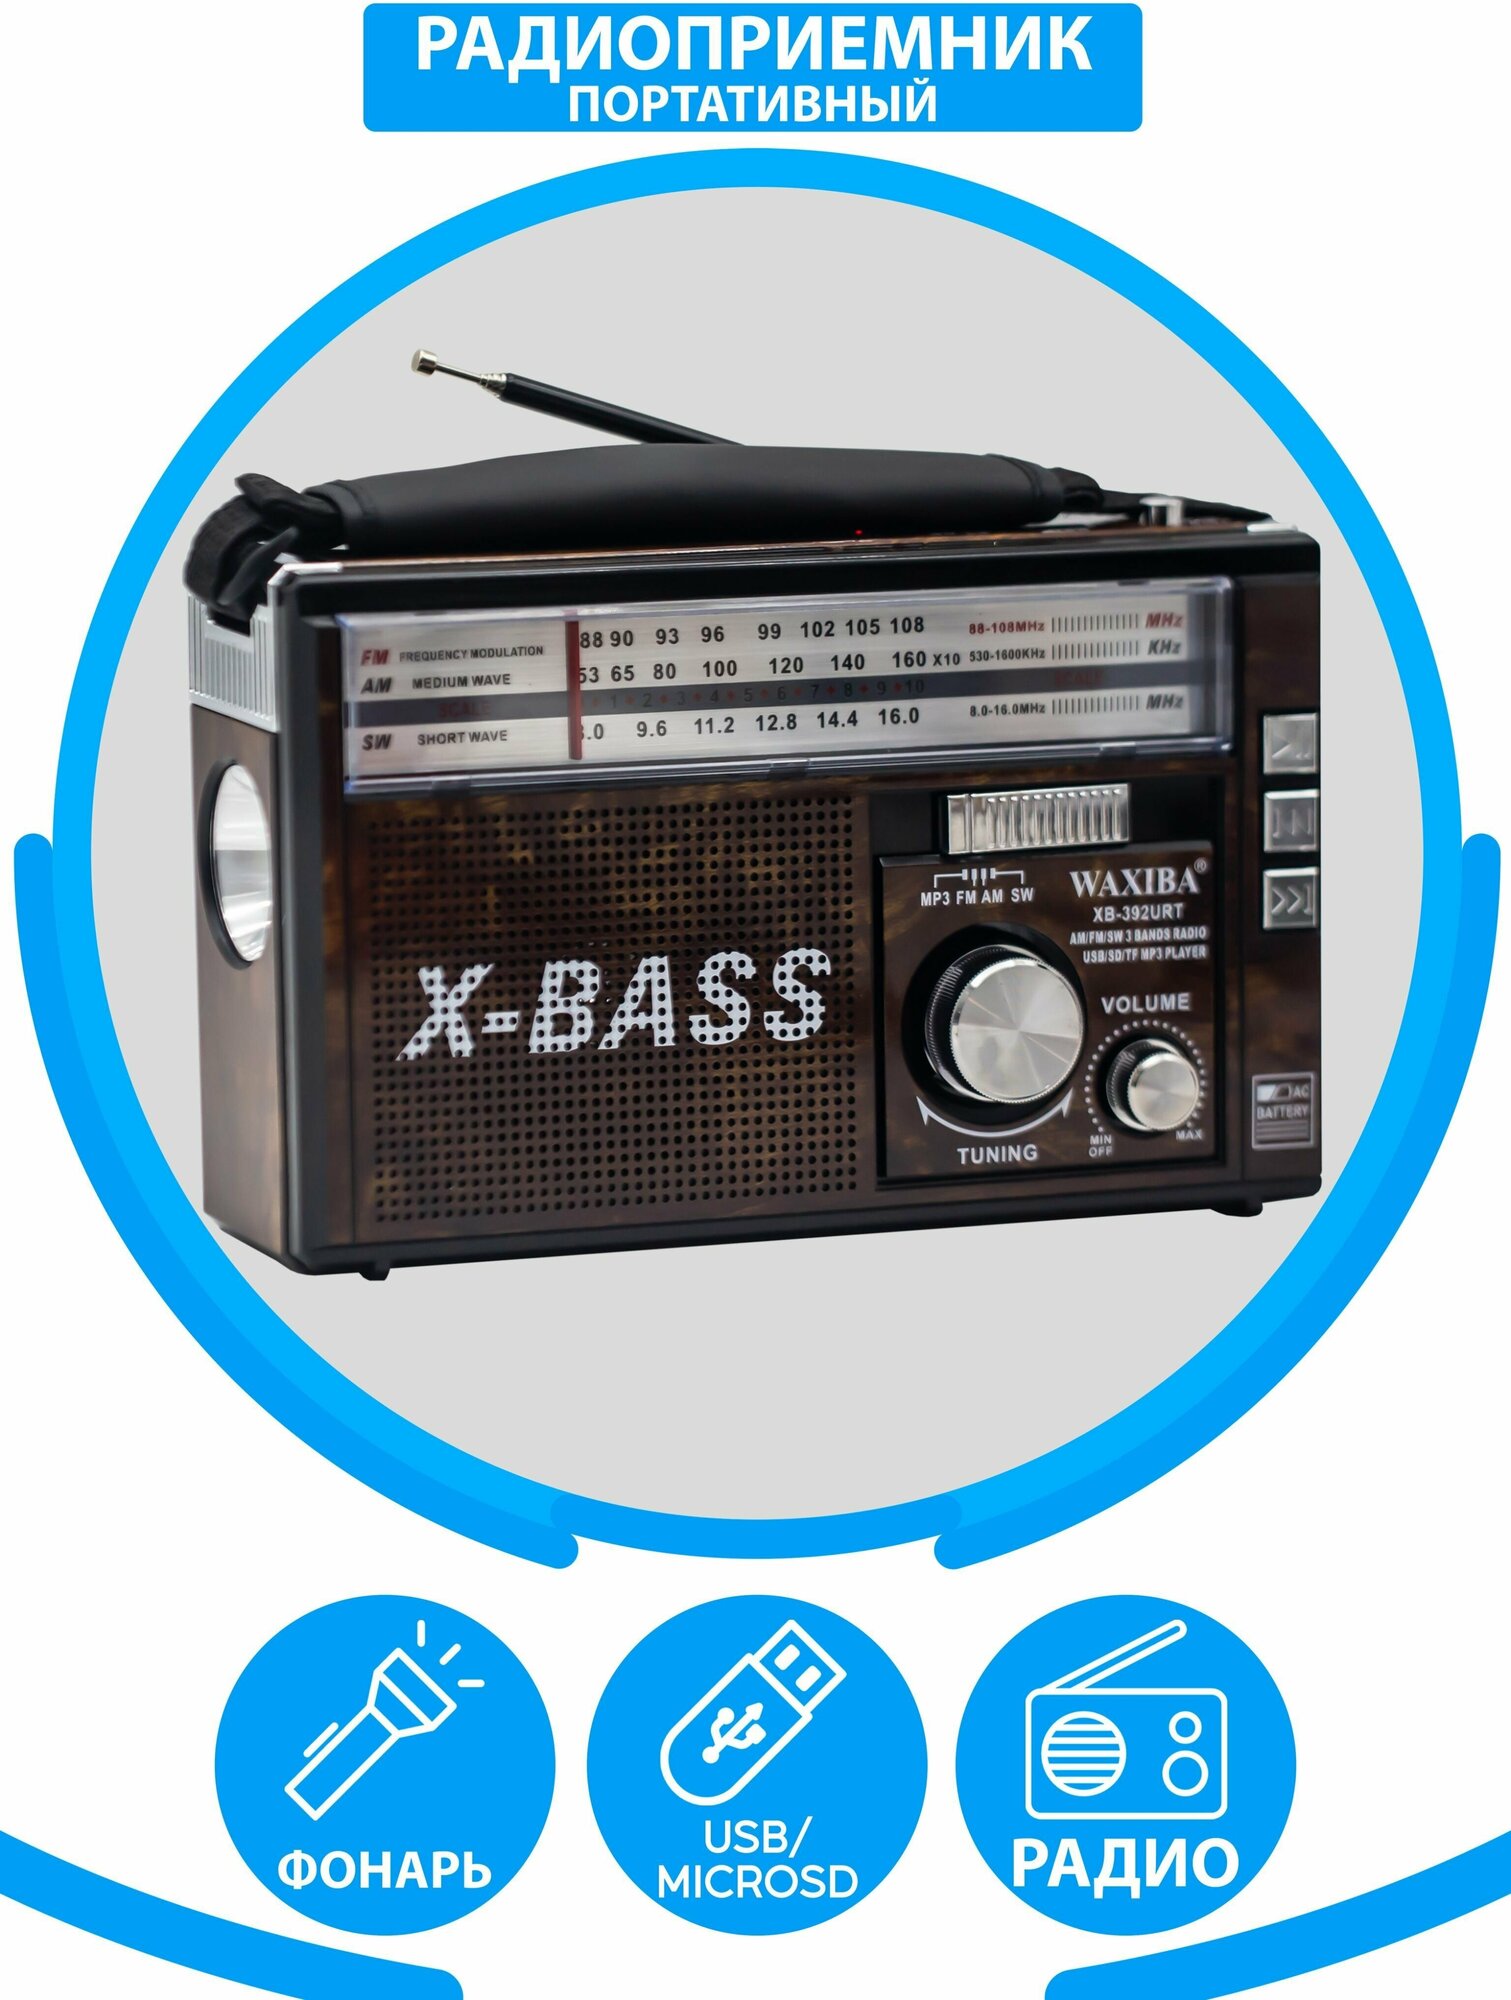 Радиоприемник AM/FM/SW/ USB, флешка, качественный звук + фонарь